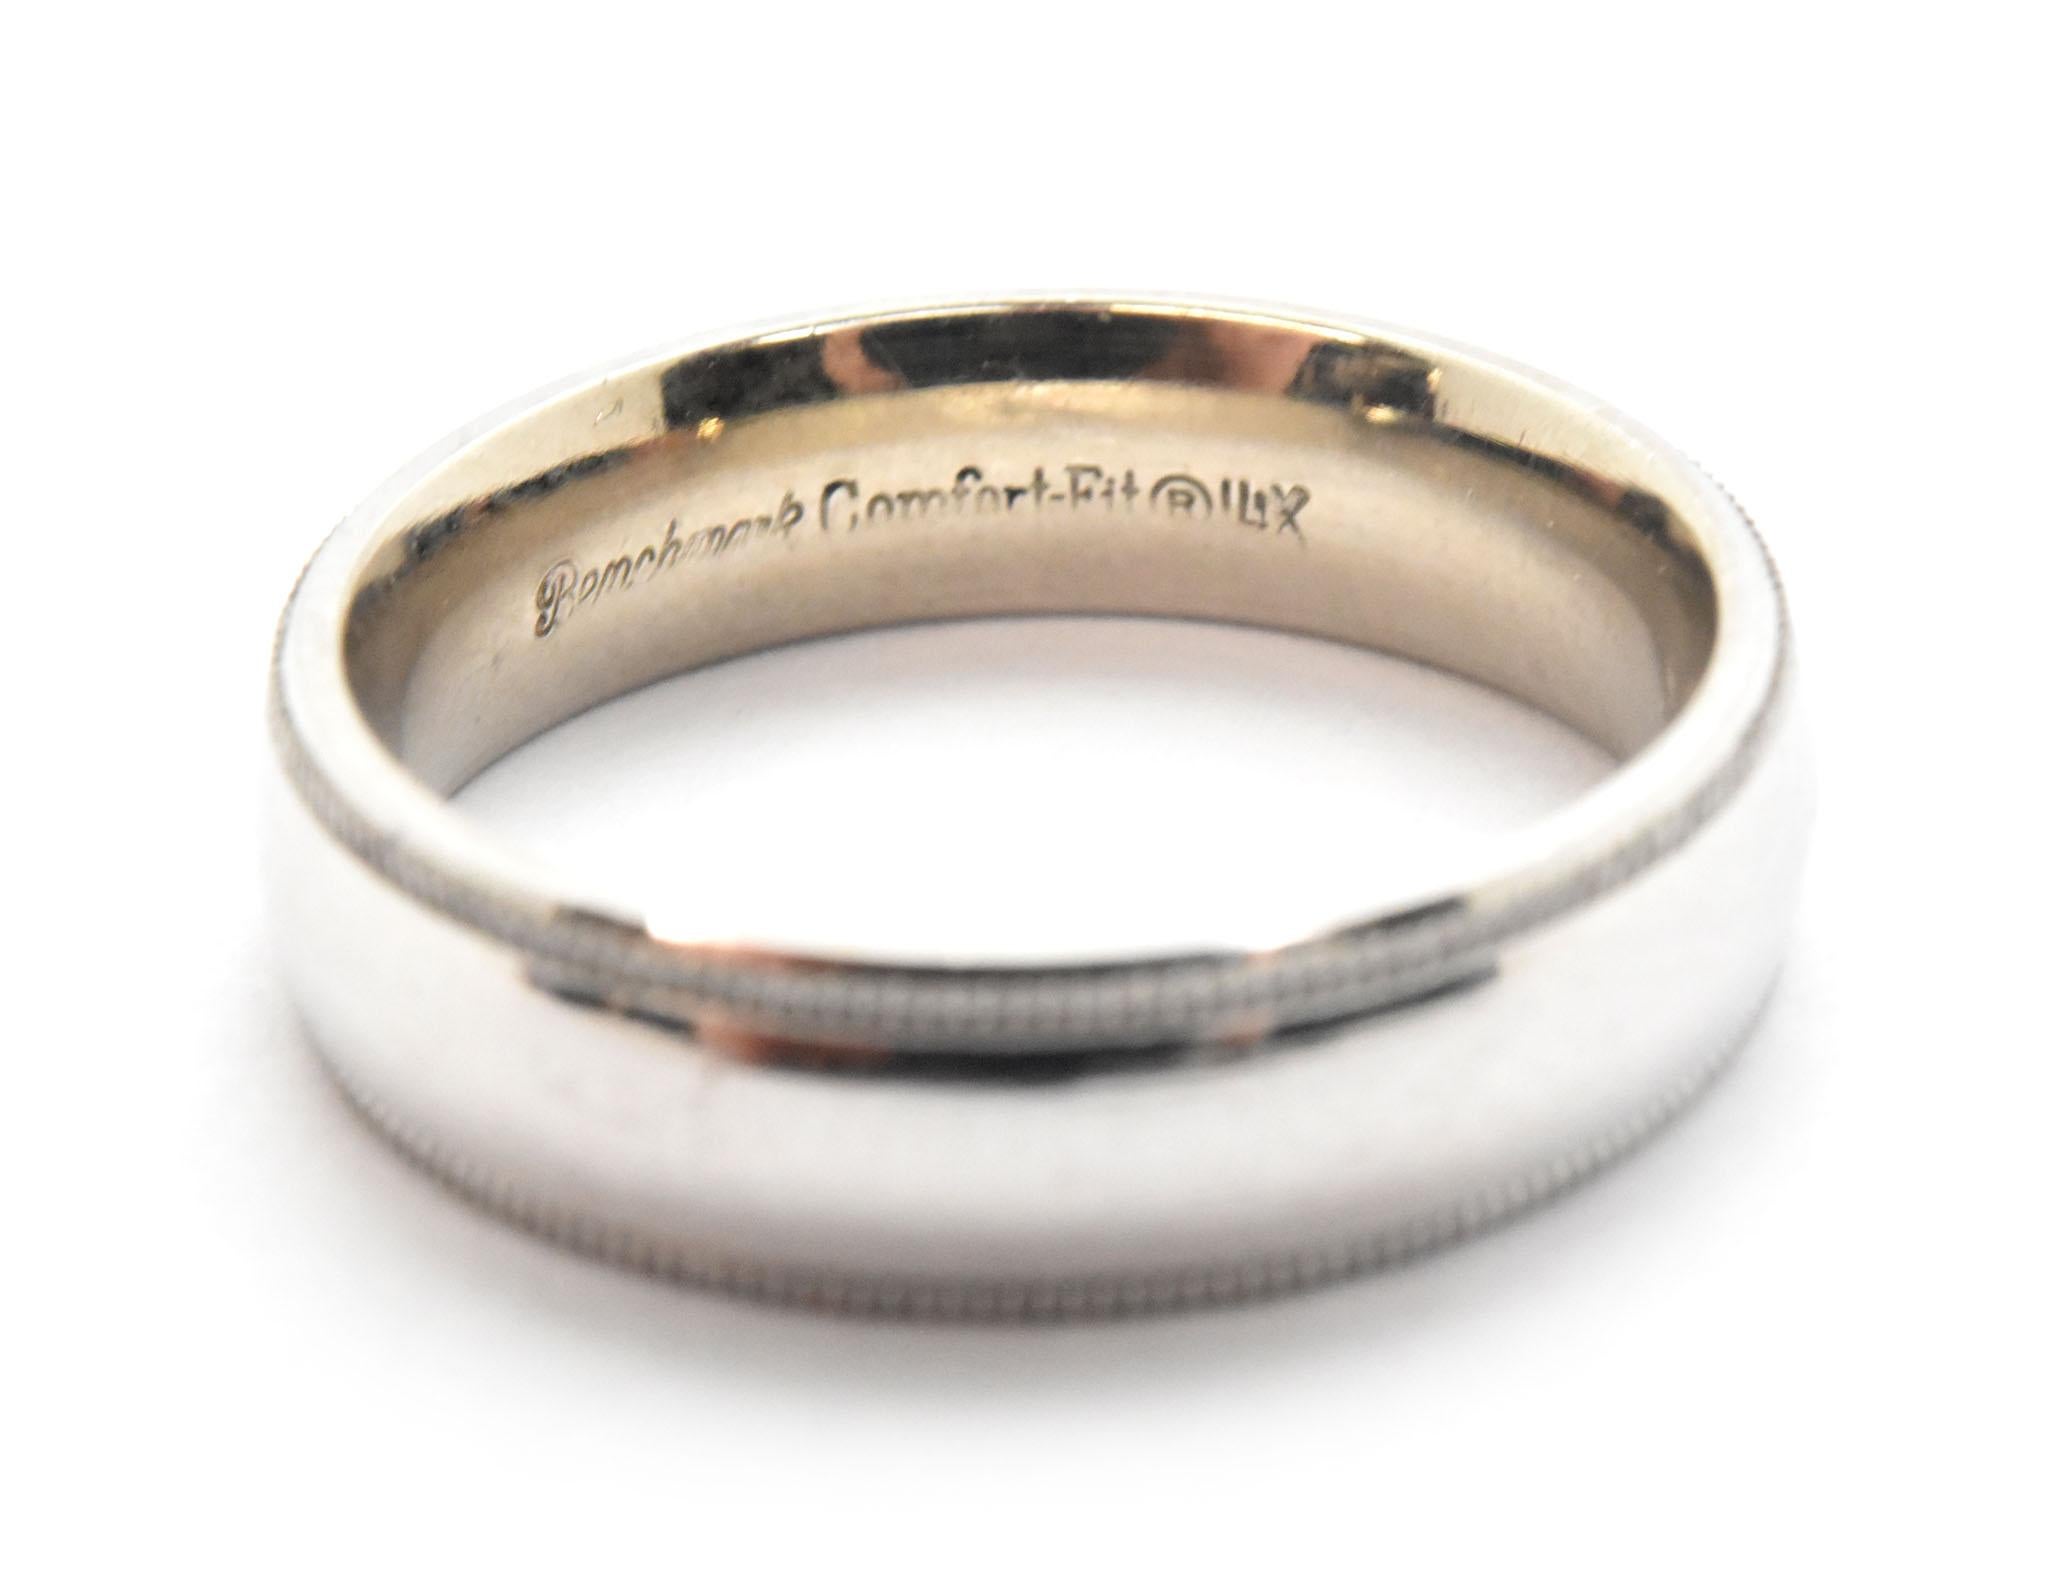 Dieses klassische Band ist aus 14 Karat Weißgold gefertigt und hochglanzpoliert. Das Band dieses Rings ist 5 mm breit und 2 mm dick. Die Größe des Bandes ist 6 und dieser Ring wiegt 5,55 Gramm.